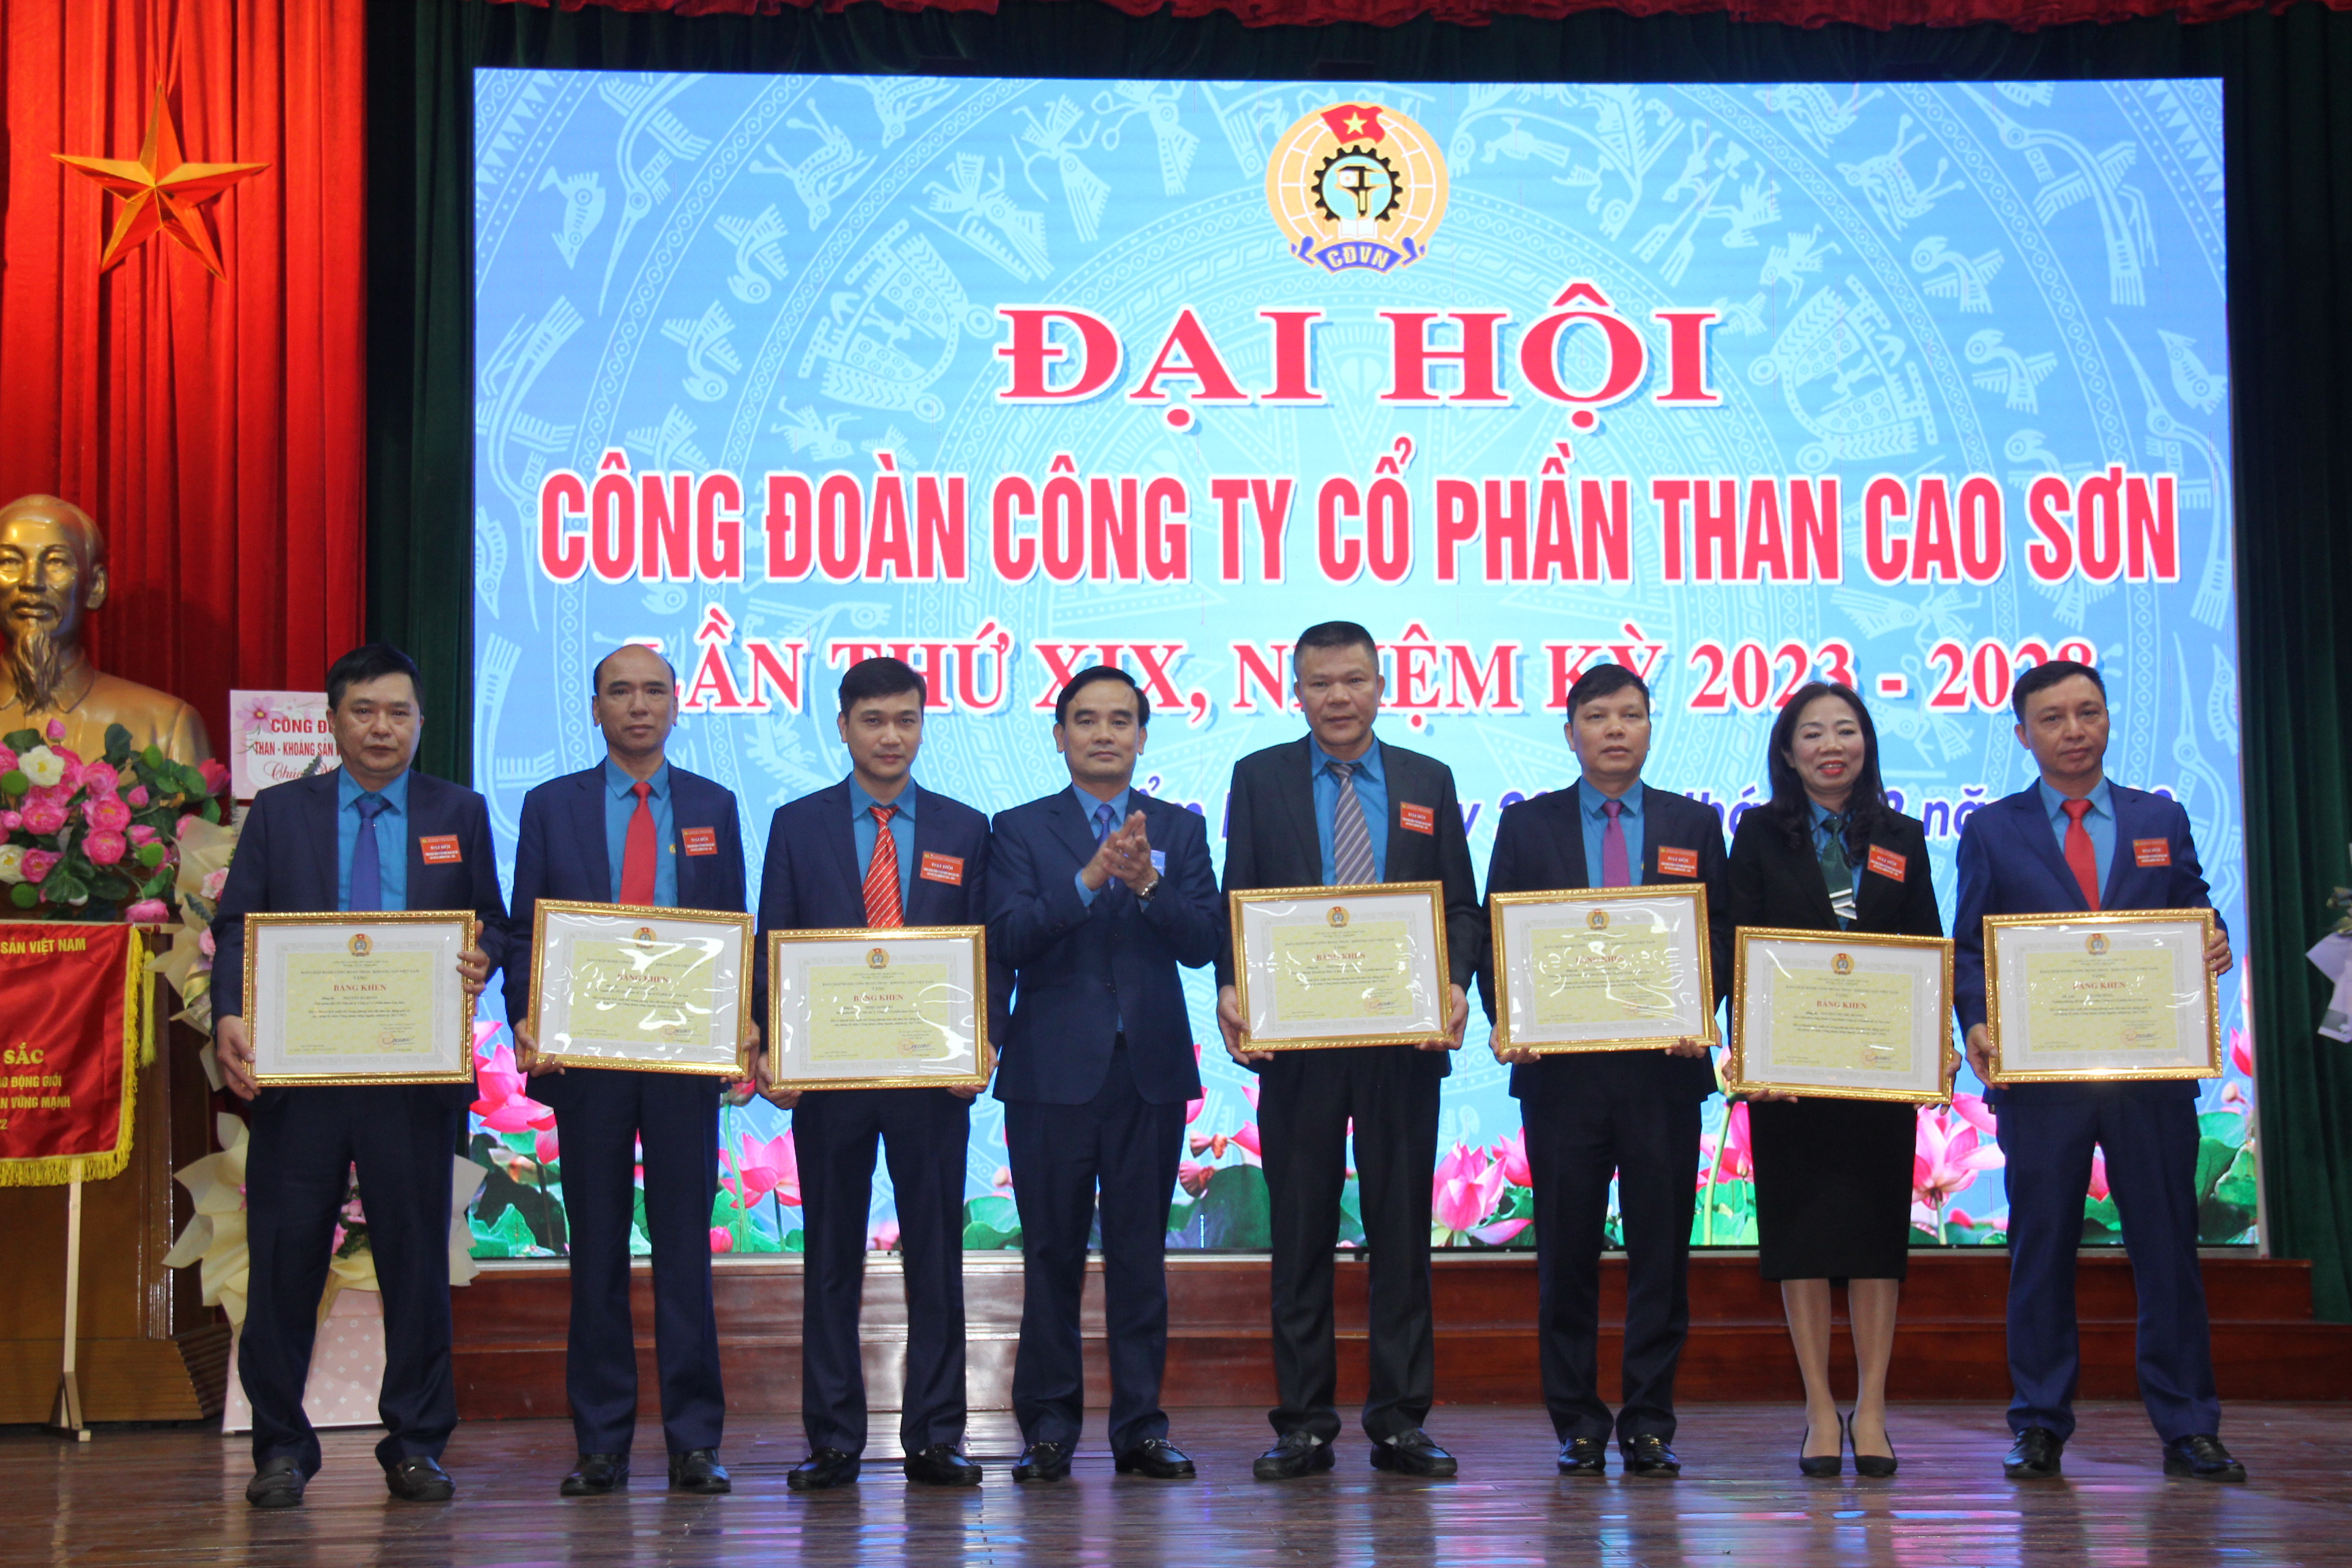 Quyết tâm hoàn thành thắng lợi Nghị quyết Đại hội Công đoàn Công ty CP Than Cao Sơn lần thứ XIX, nhiệm kỳ 2023-2028